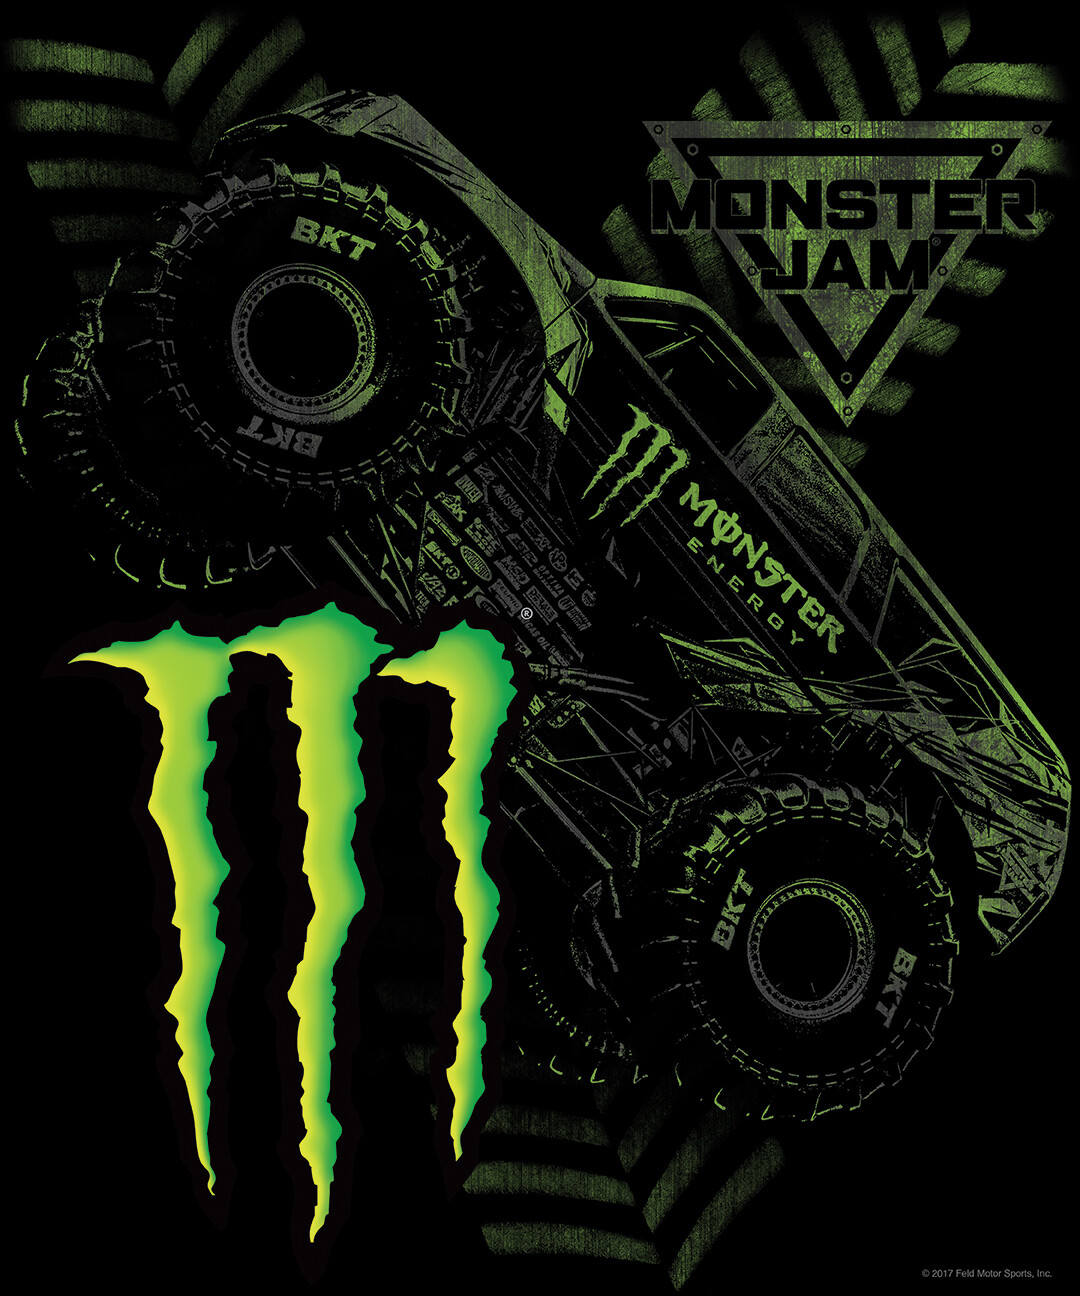 Monster energy monster truck  Monster trucks, Monster energy, Monster